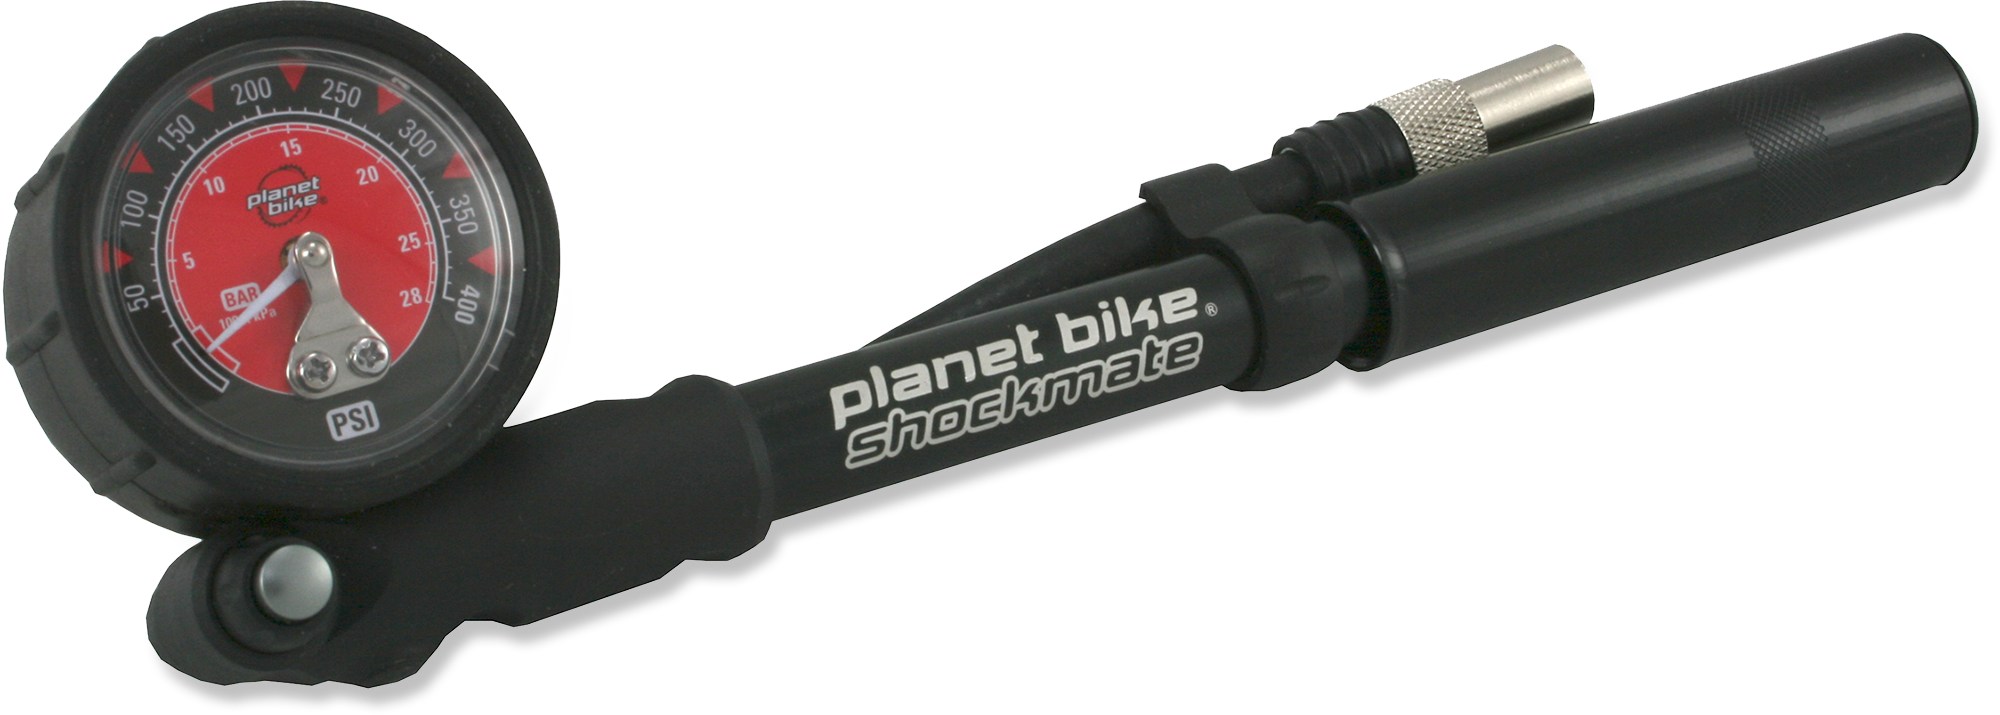 bicycle shock pump